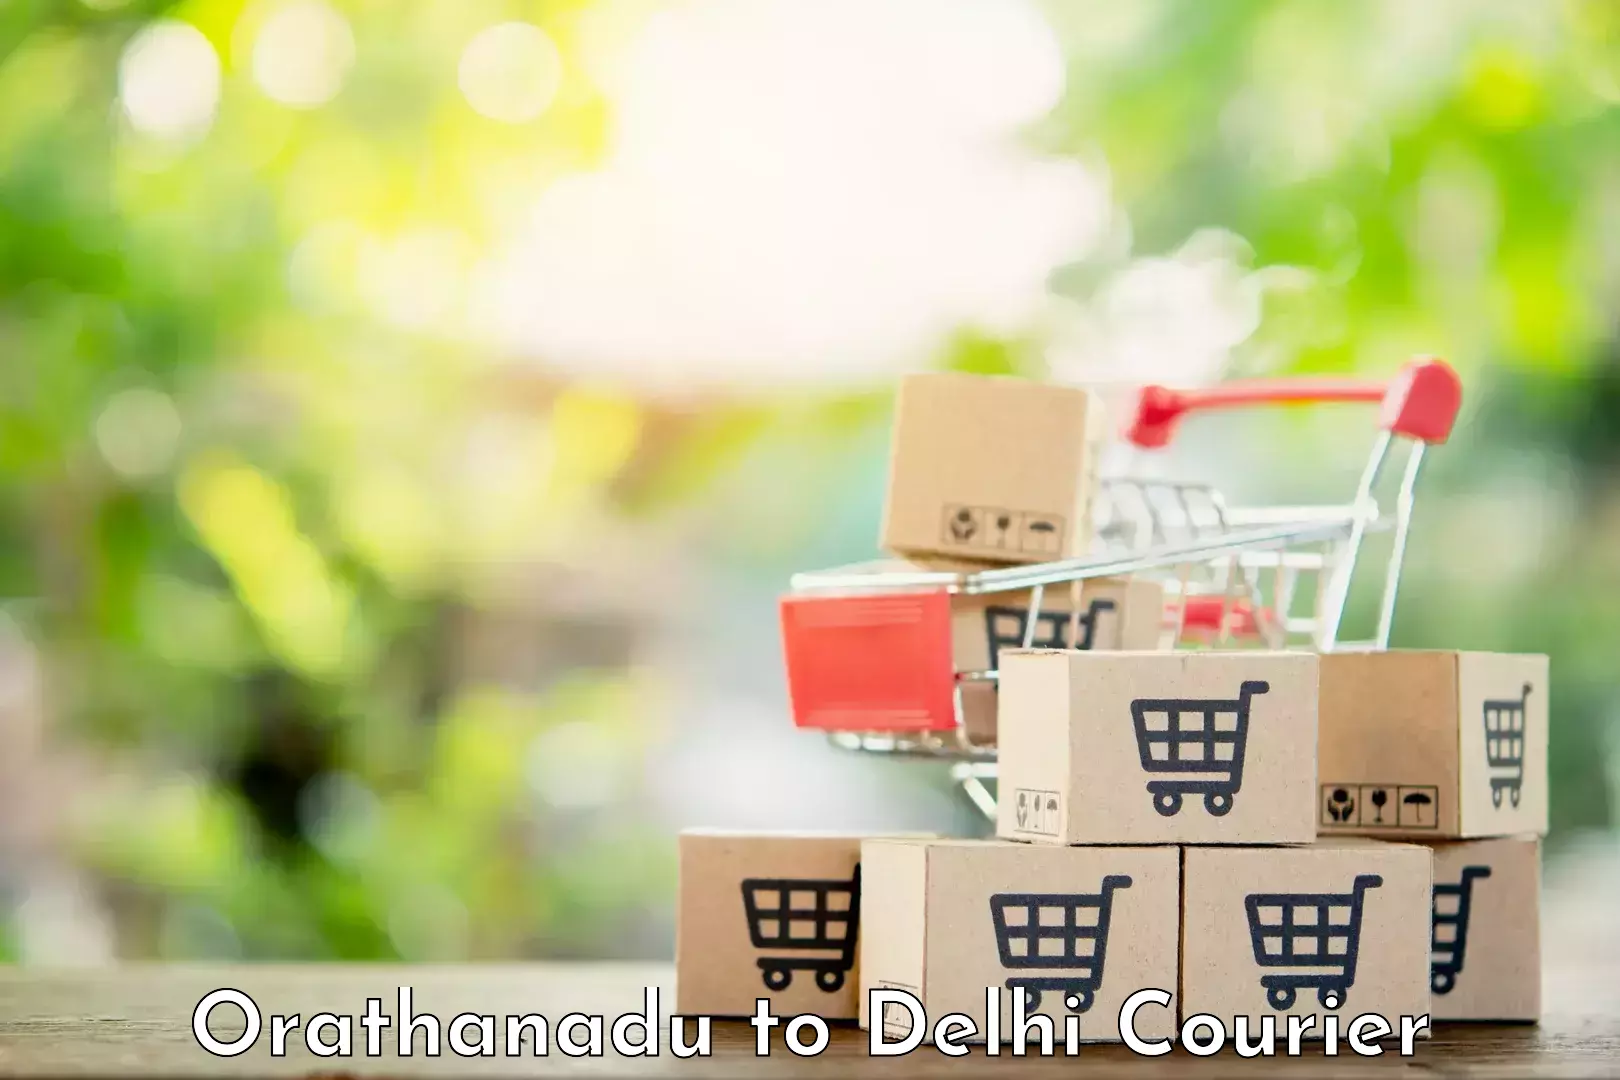 Customer-oriented courier services Orathanadu to Jawaharlal Nehru University New Delhi